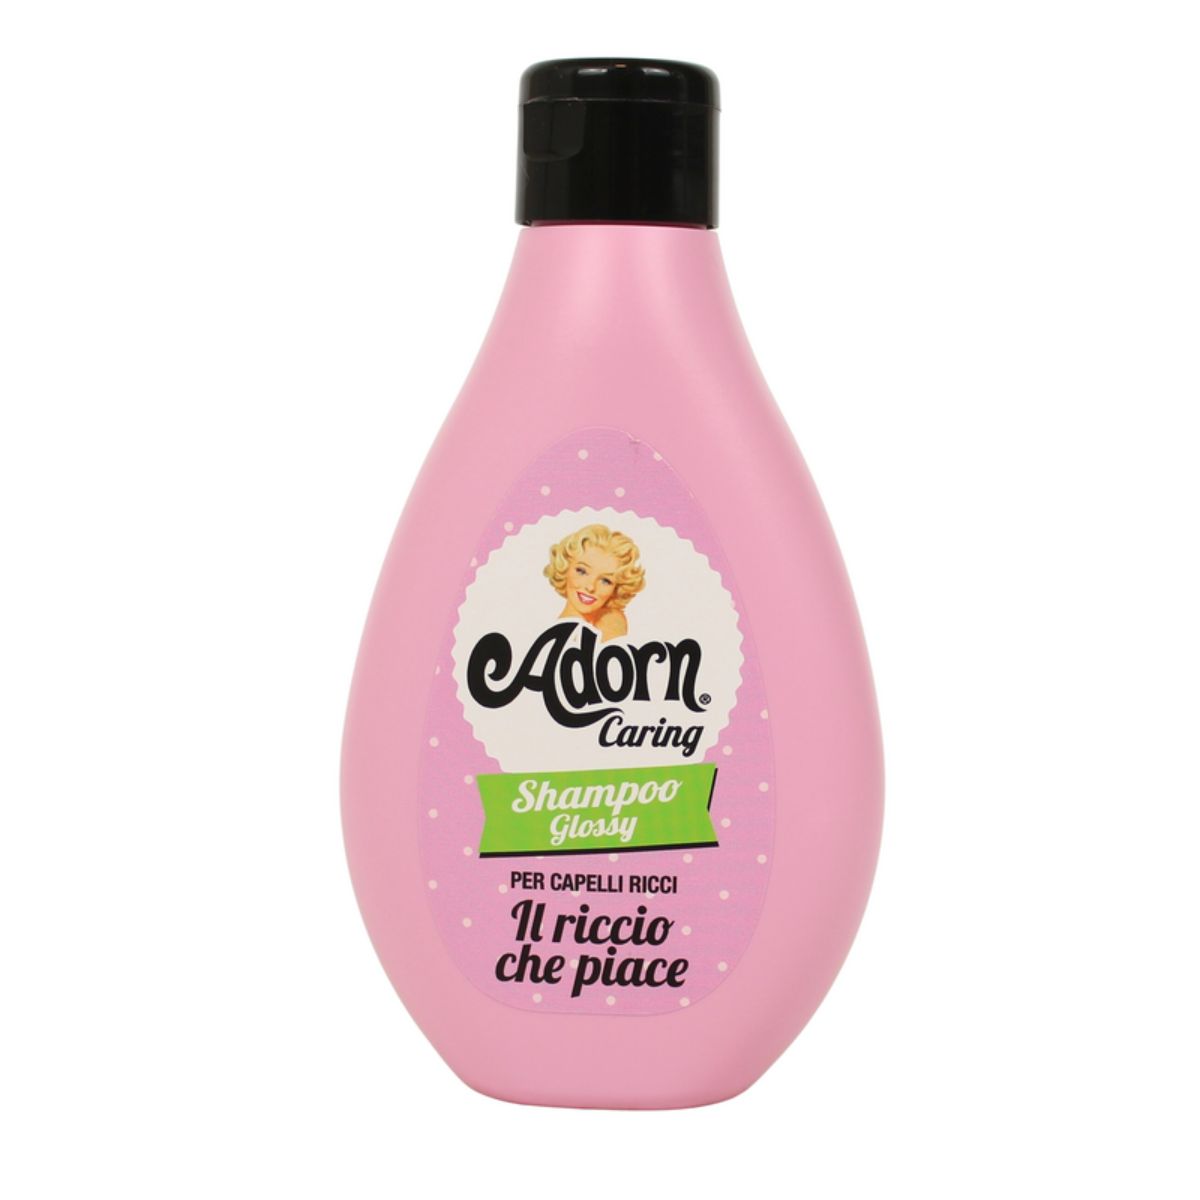 Adorn Shampoo Glossy Per Capelli Ricci 250 Ml Adorn